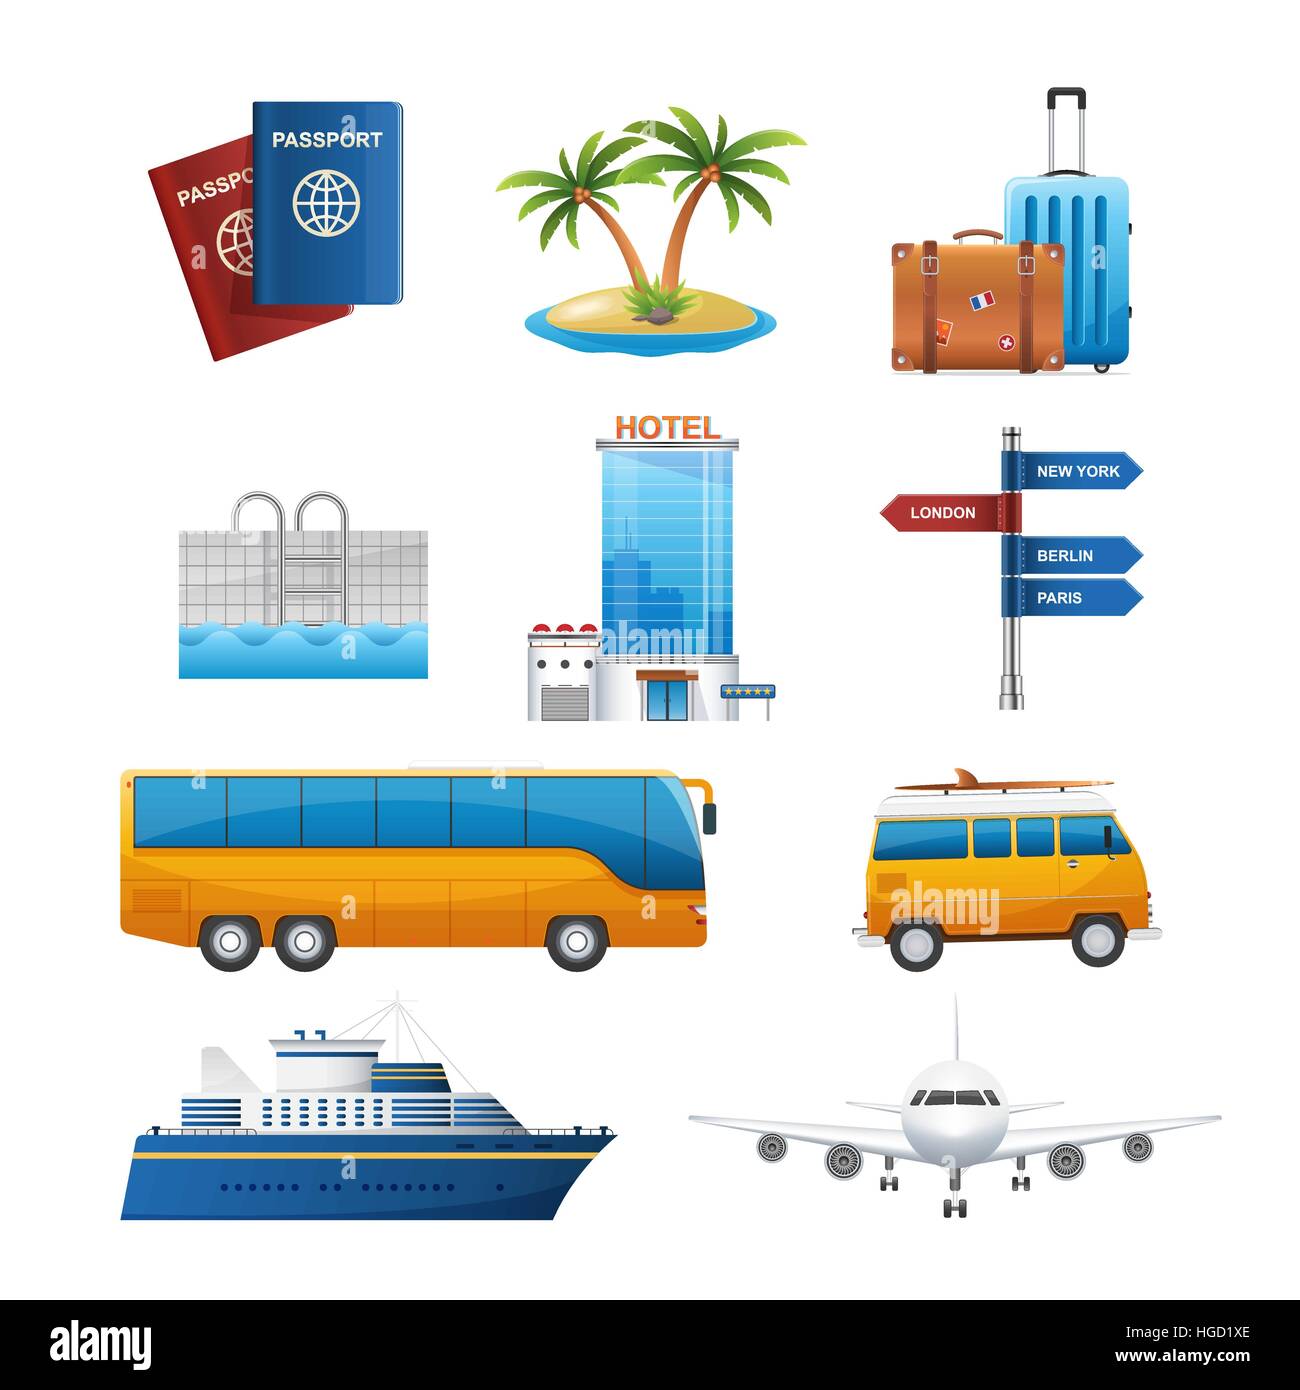 Tourisme Voyage réaliste vector icons set Illustration de Vecteur